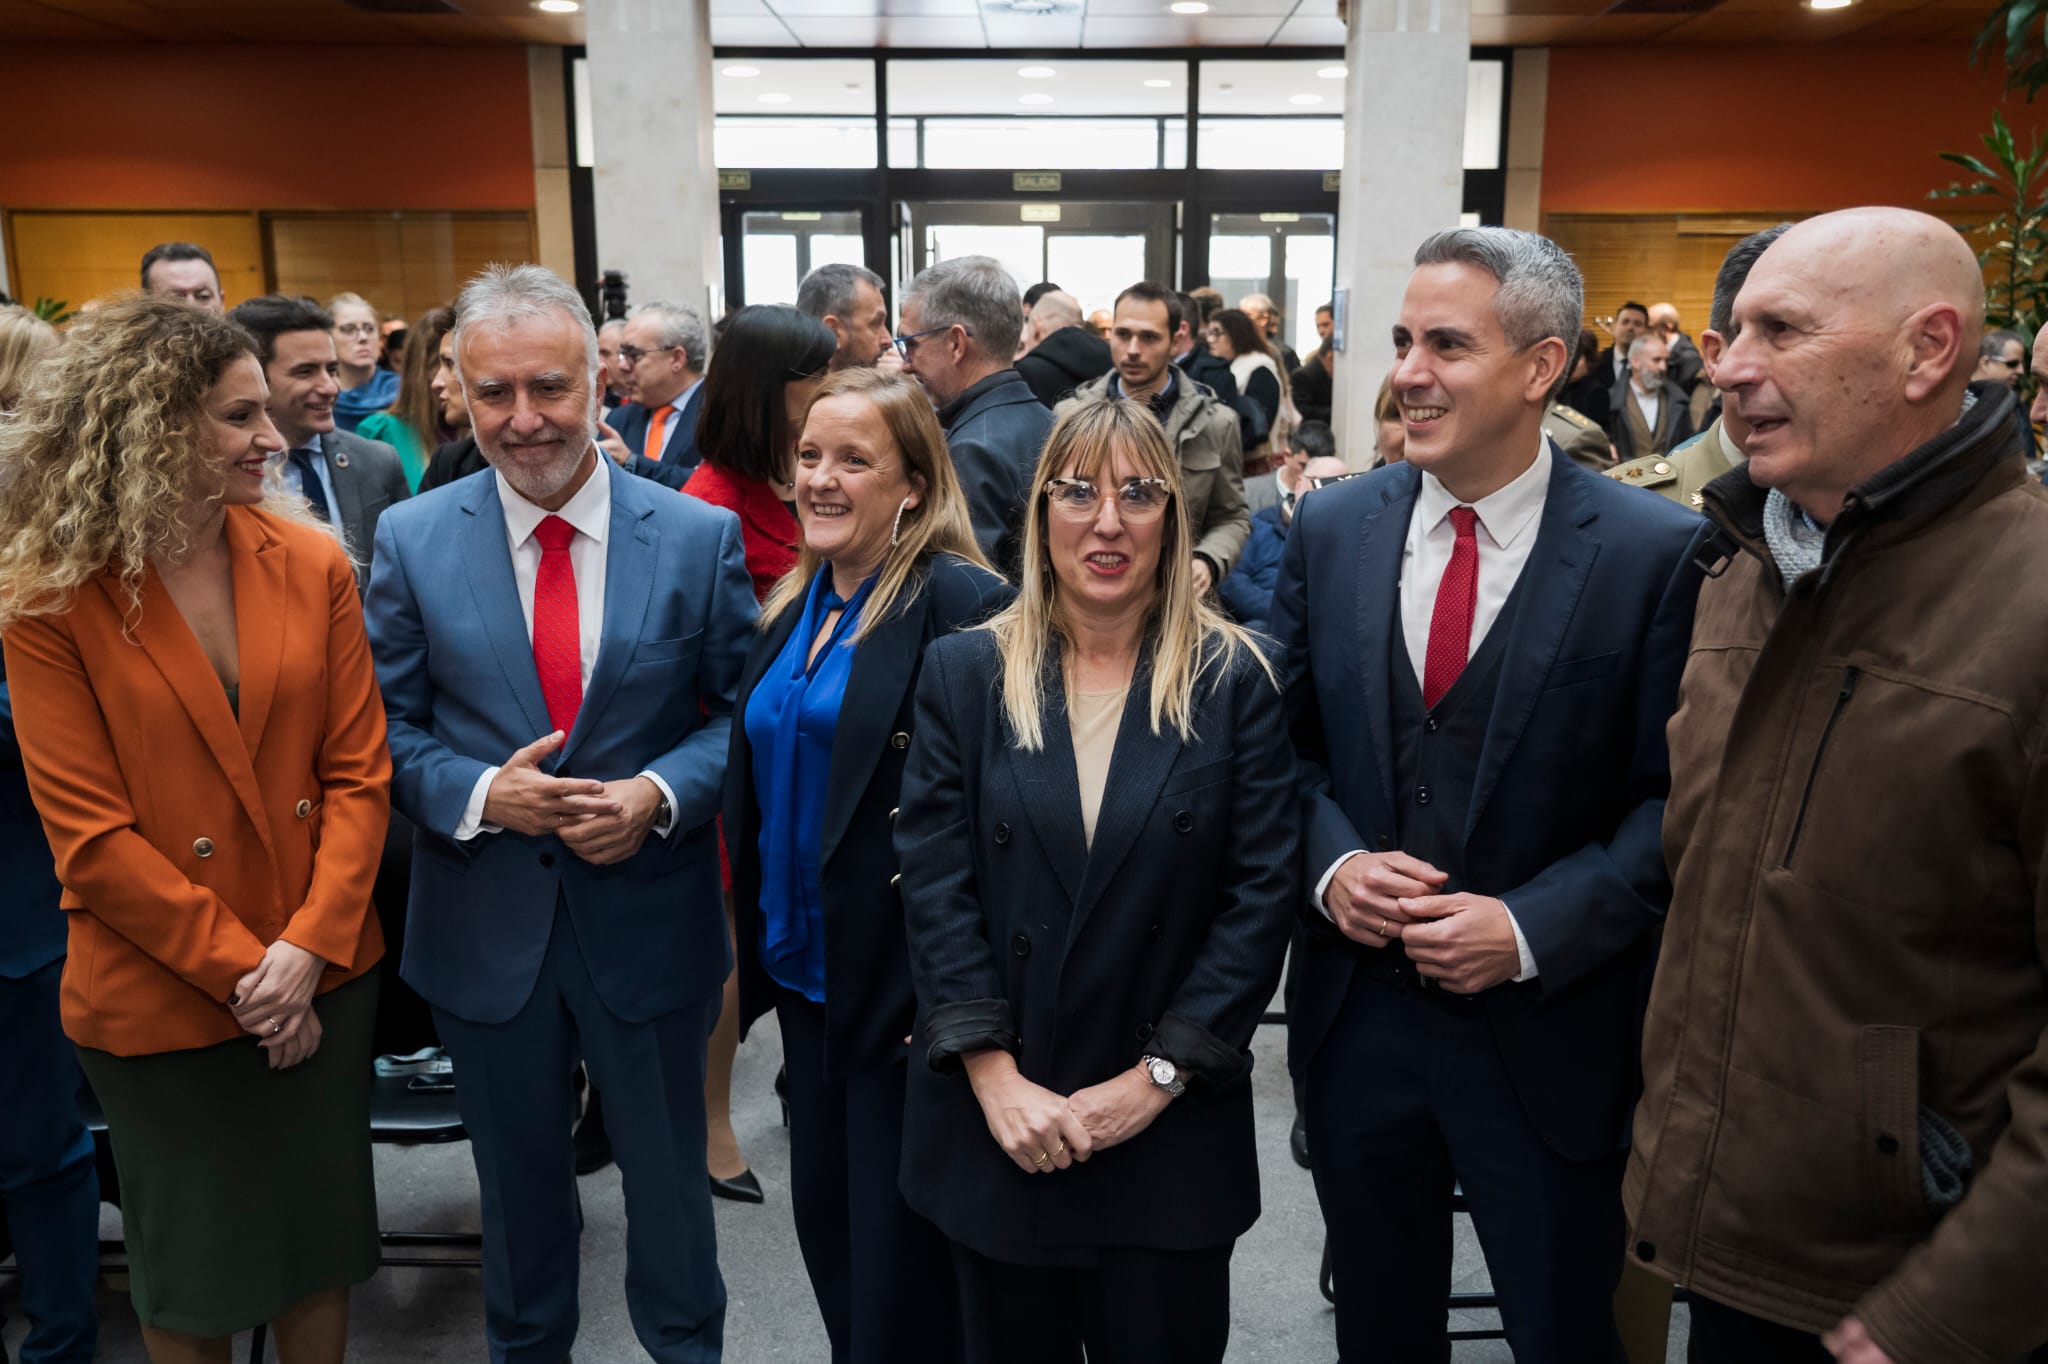 Toma de posesión de la nueva delegada del Gobierno en Cantabria